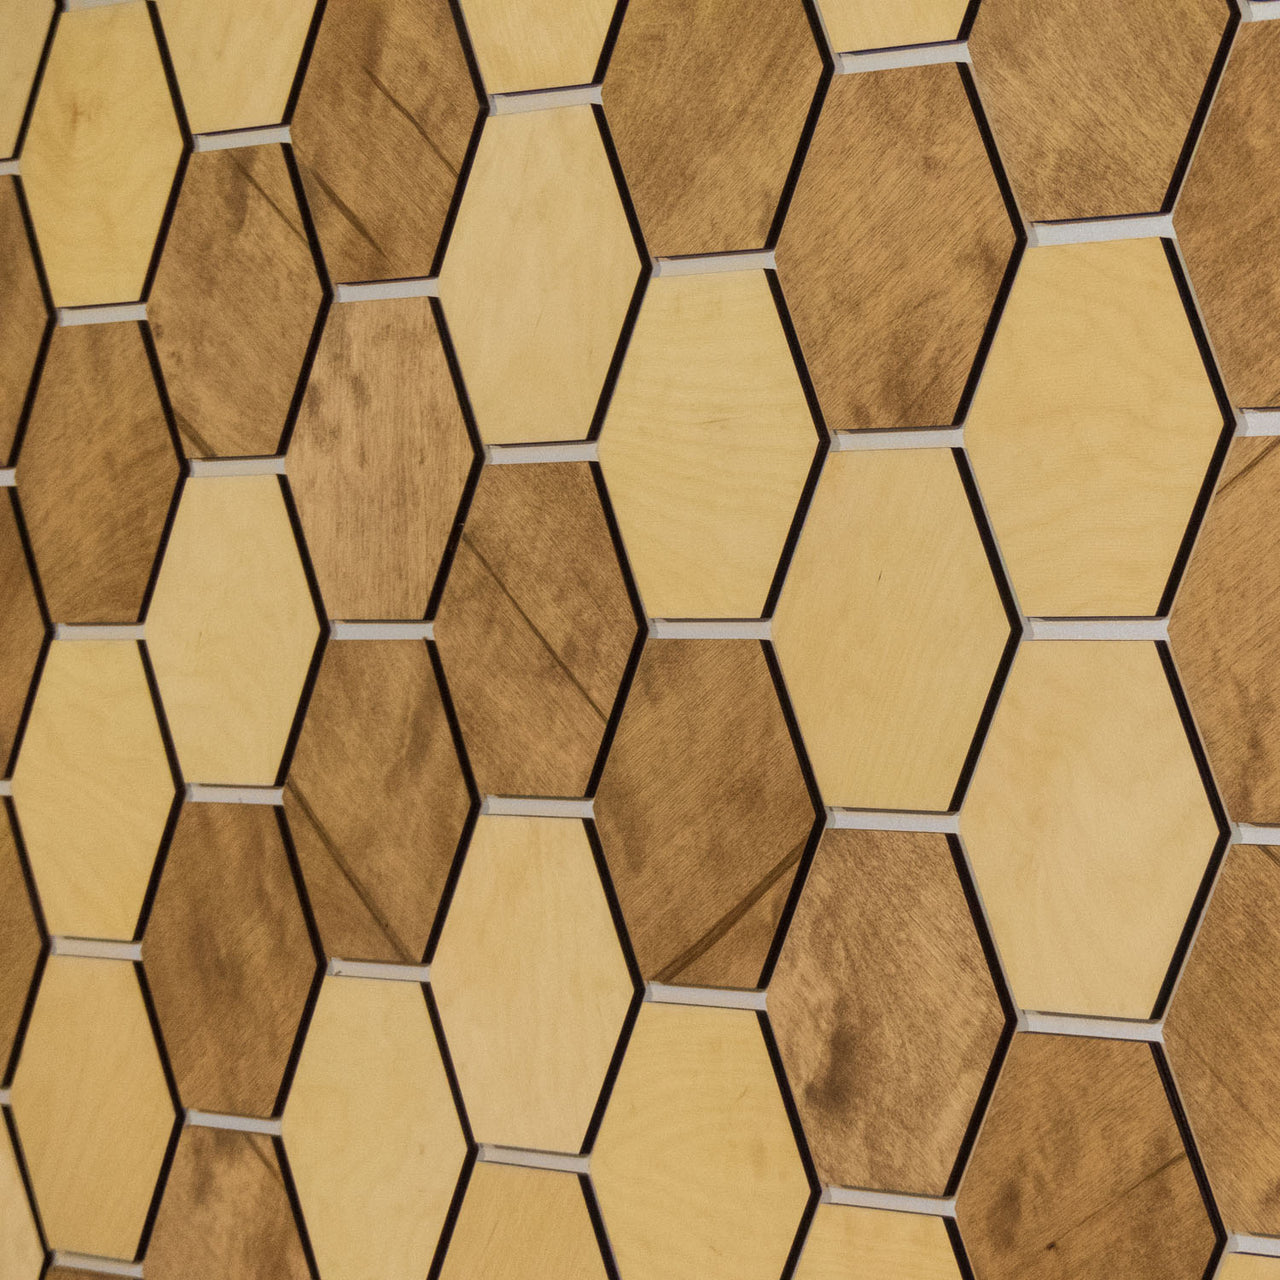 Hexagonal Wooden Wall Panels [32pcs] Birch Light